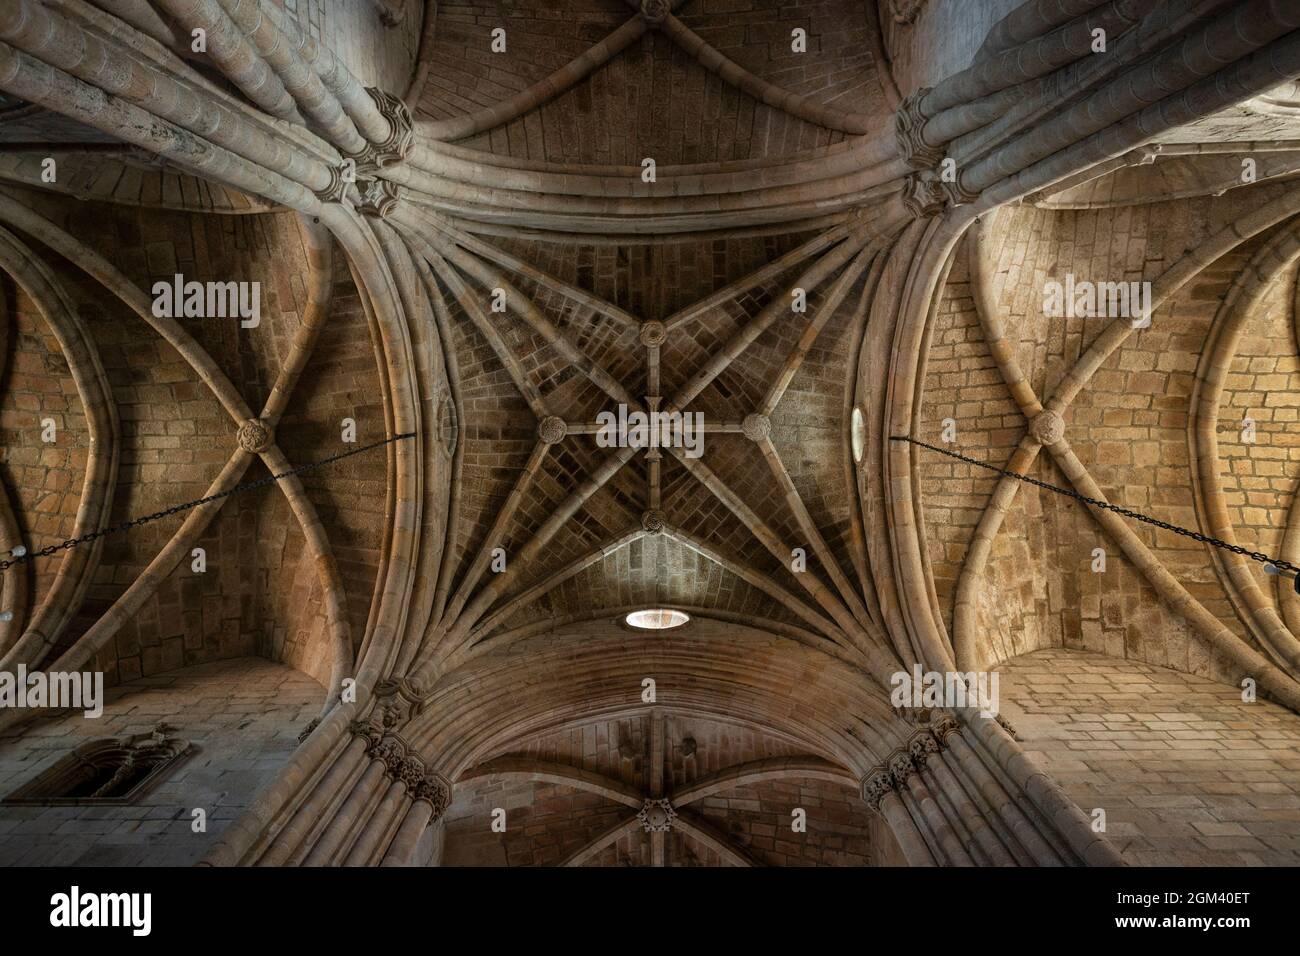 Detalle de la bóveda de la Catedral de Guarda (SE da Guarda) en la ciudad de Guarda, Portugal. Foto de stock